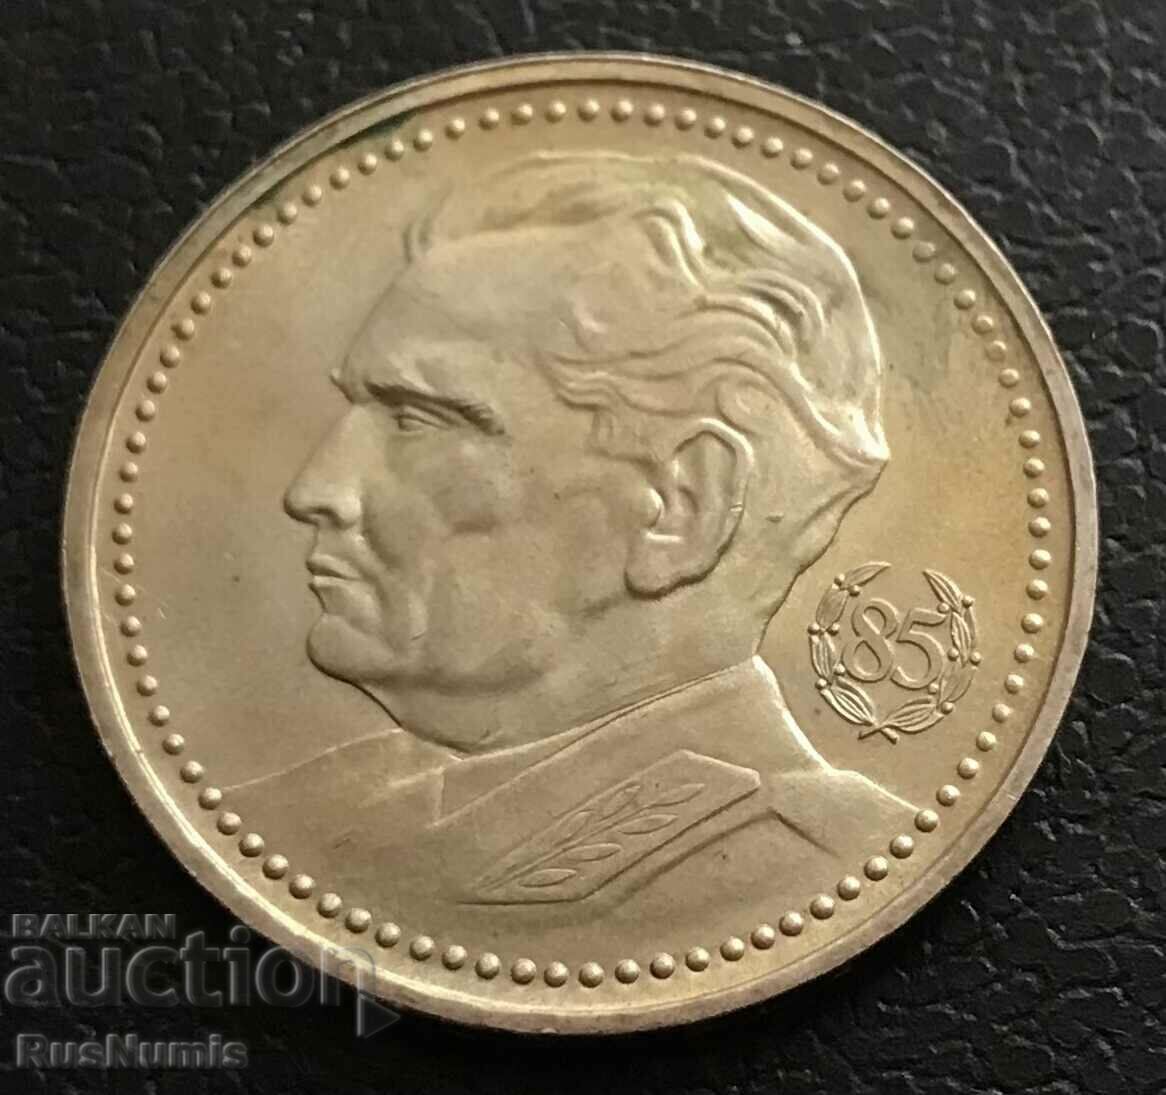 Yugoslavia. 200 dinars 1977. Josip Broz Tito. Silver. UNC.